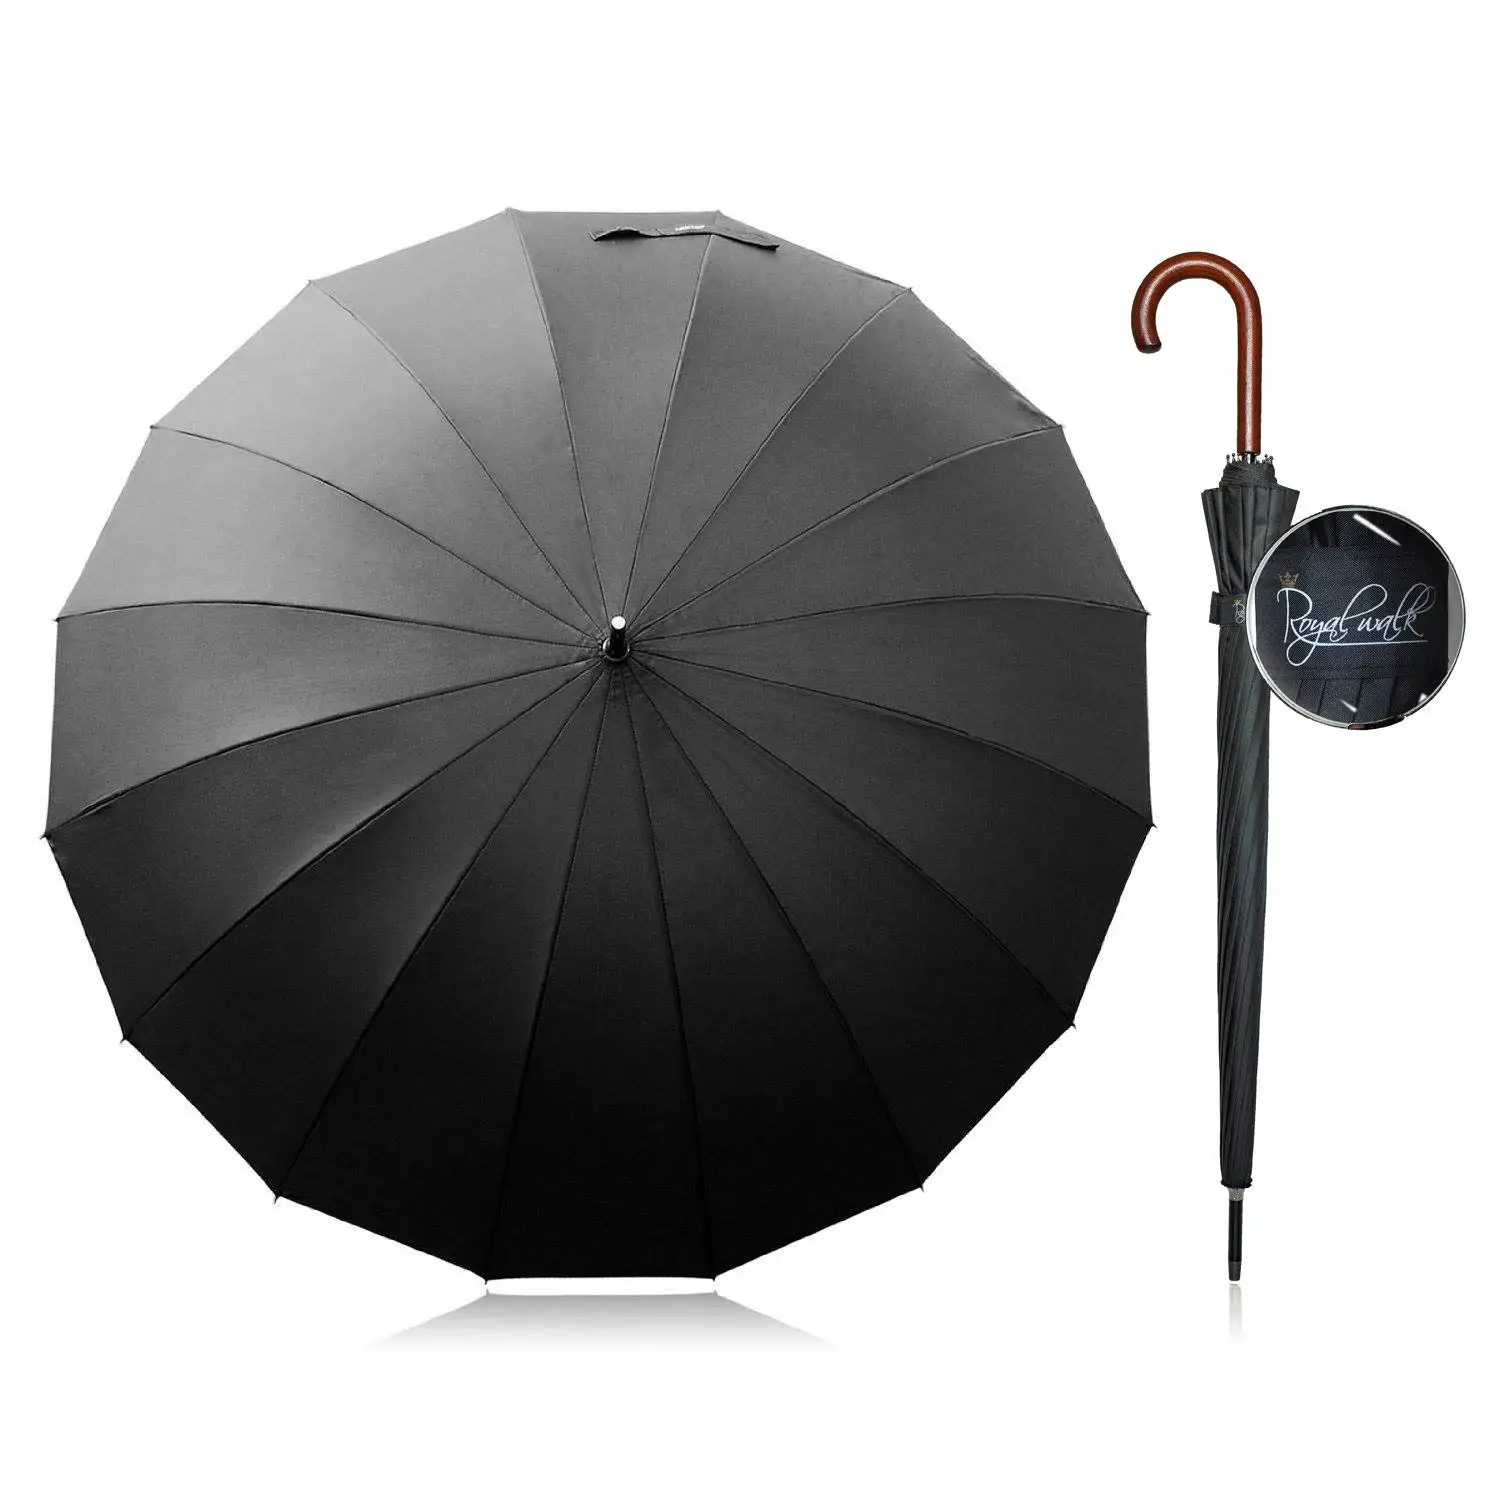 Купить прочный зонтик. Зонт Royal Umbrella. Зонт Роял Хай. Самые прочные зонты. Широкий зонт.